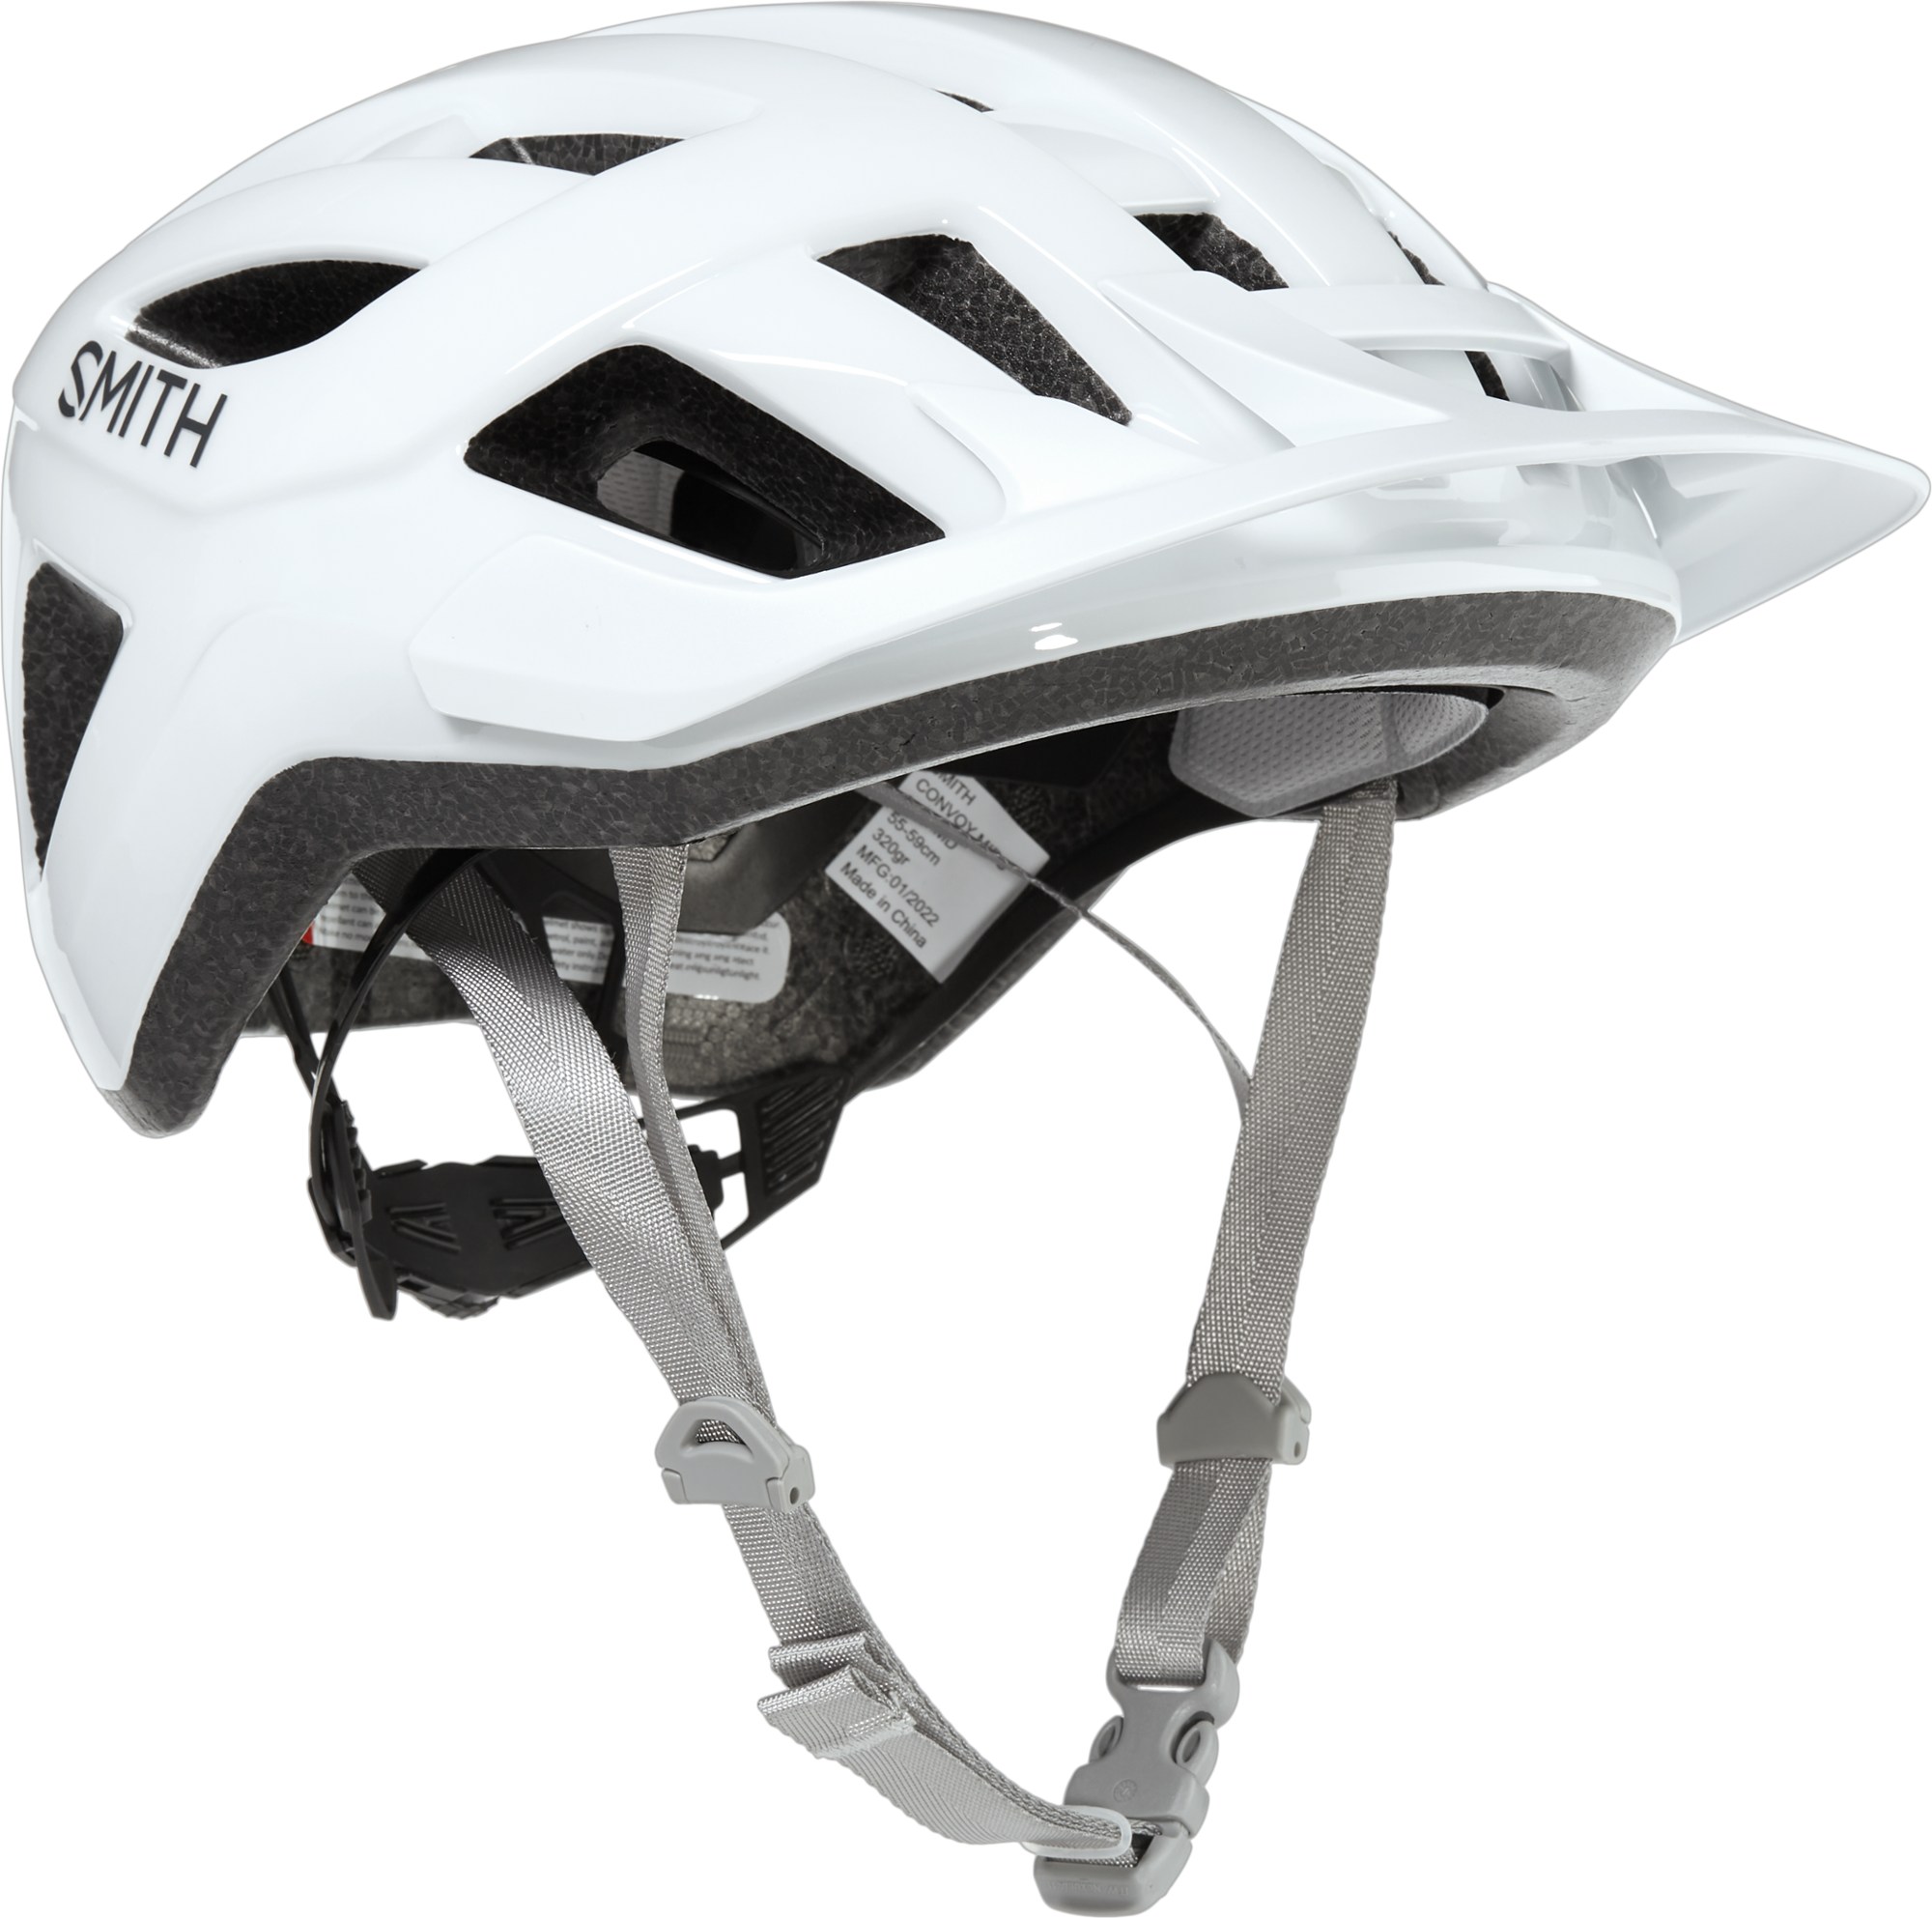 Велосипедный шлем Convoy MIPS Smith, белый цена и фото